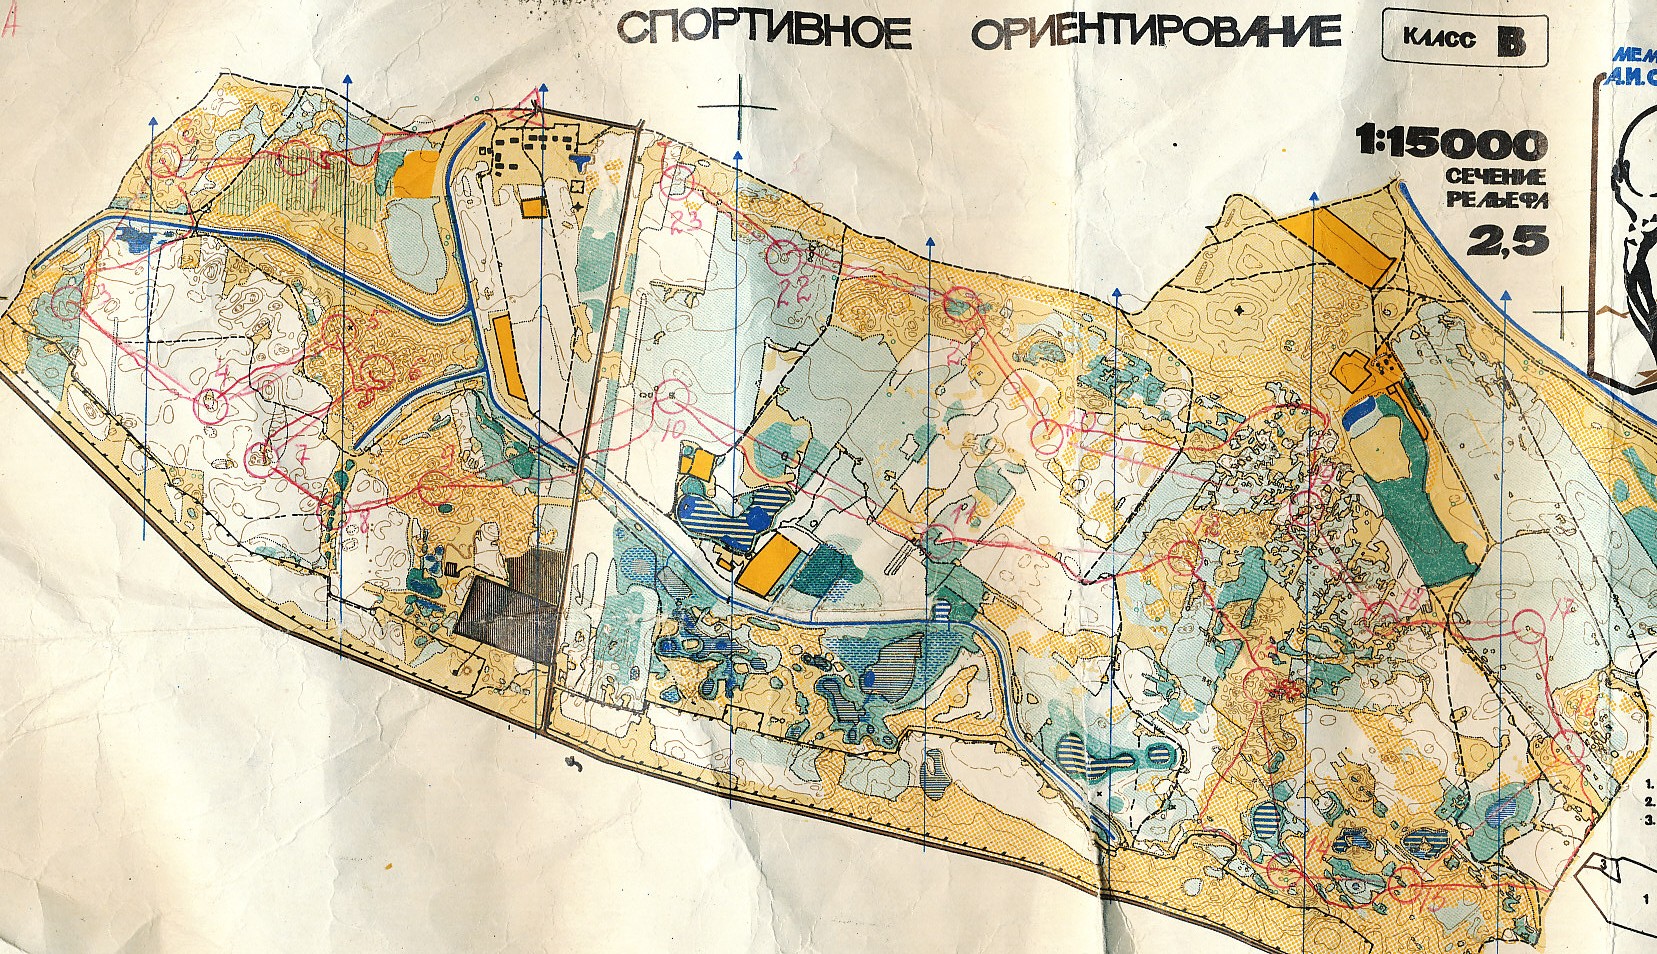 HøstØst, Dnepropetrovsk (1989-11-01)